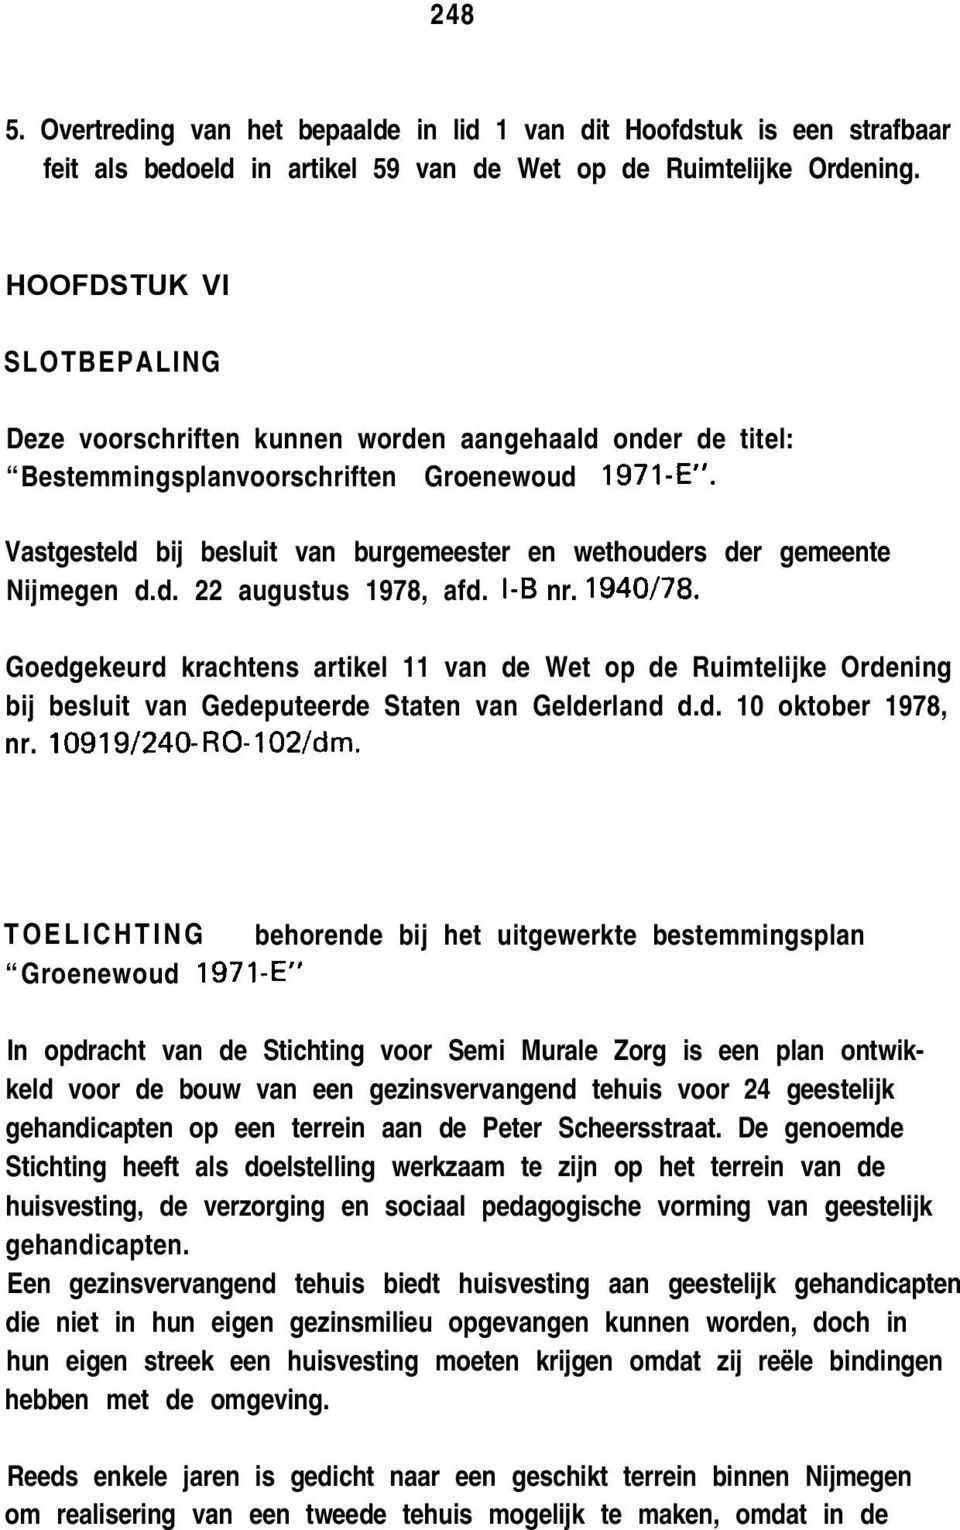 Vastgesteld bij besluit van burgemeester en wethouders der gemeente Nijmegen d.d. 22 augustus 1978, afd. I-B nr. 1940/78.